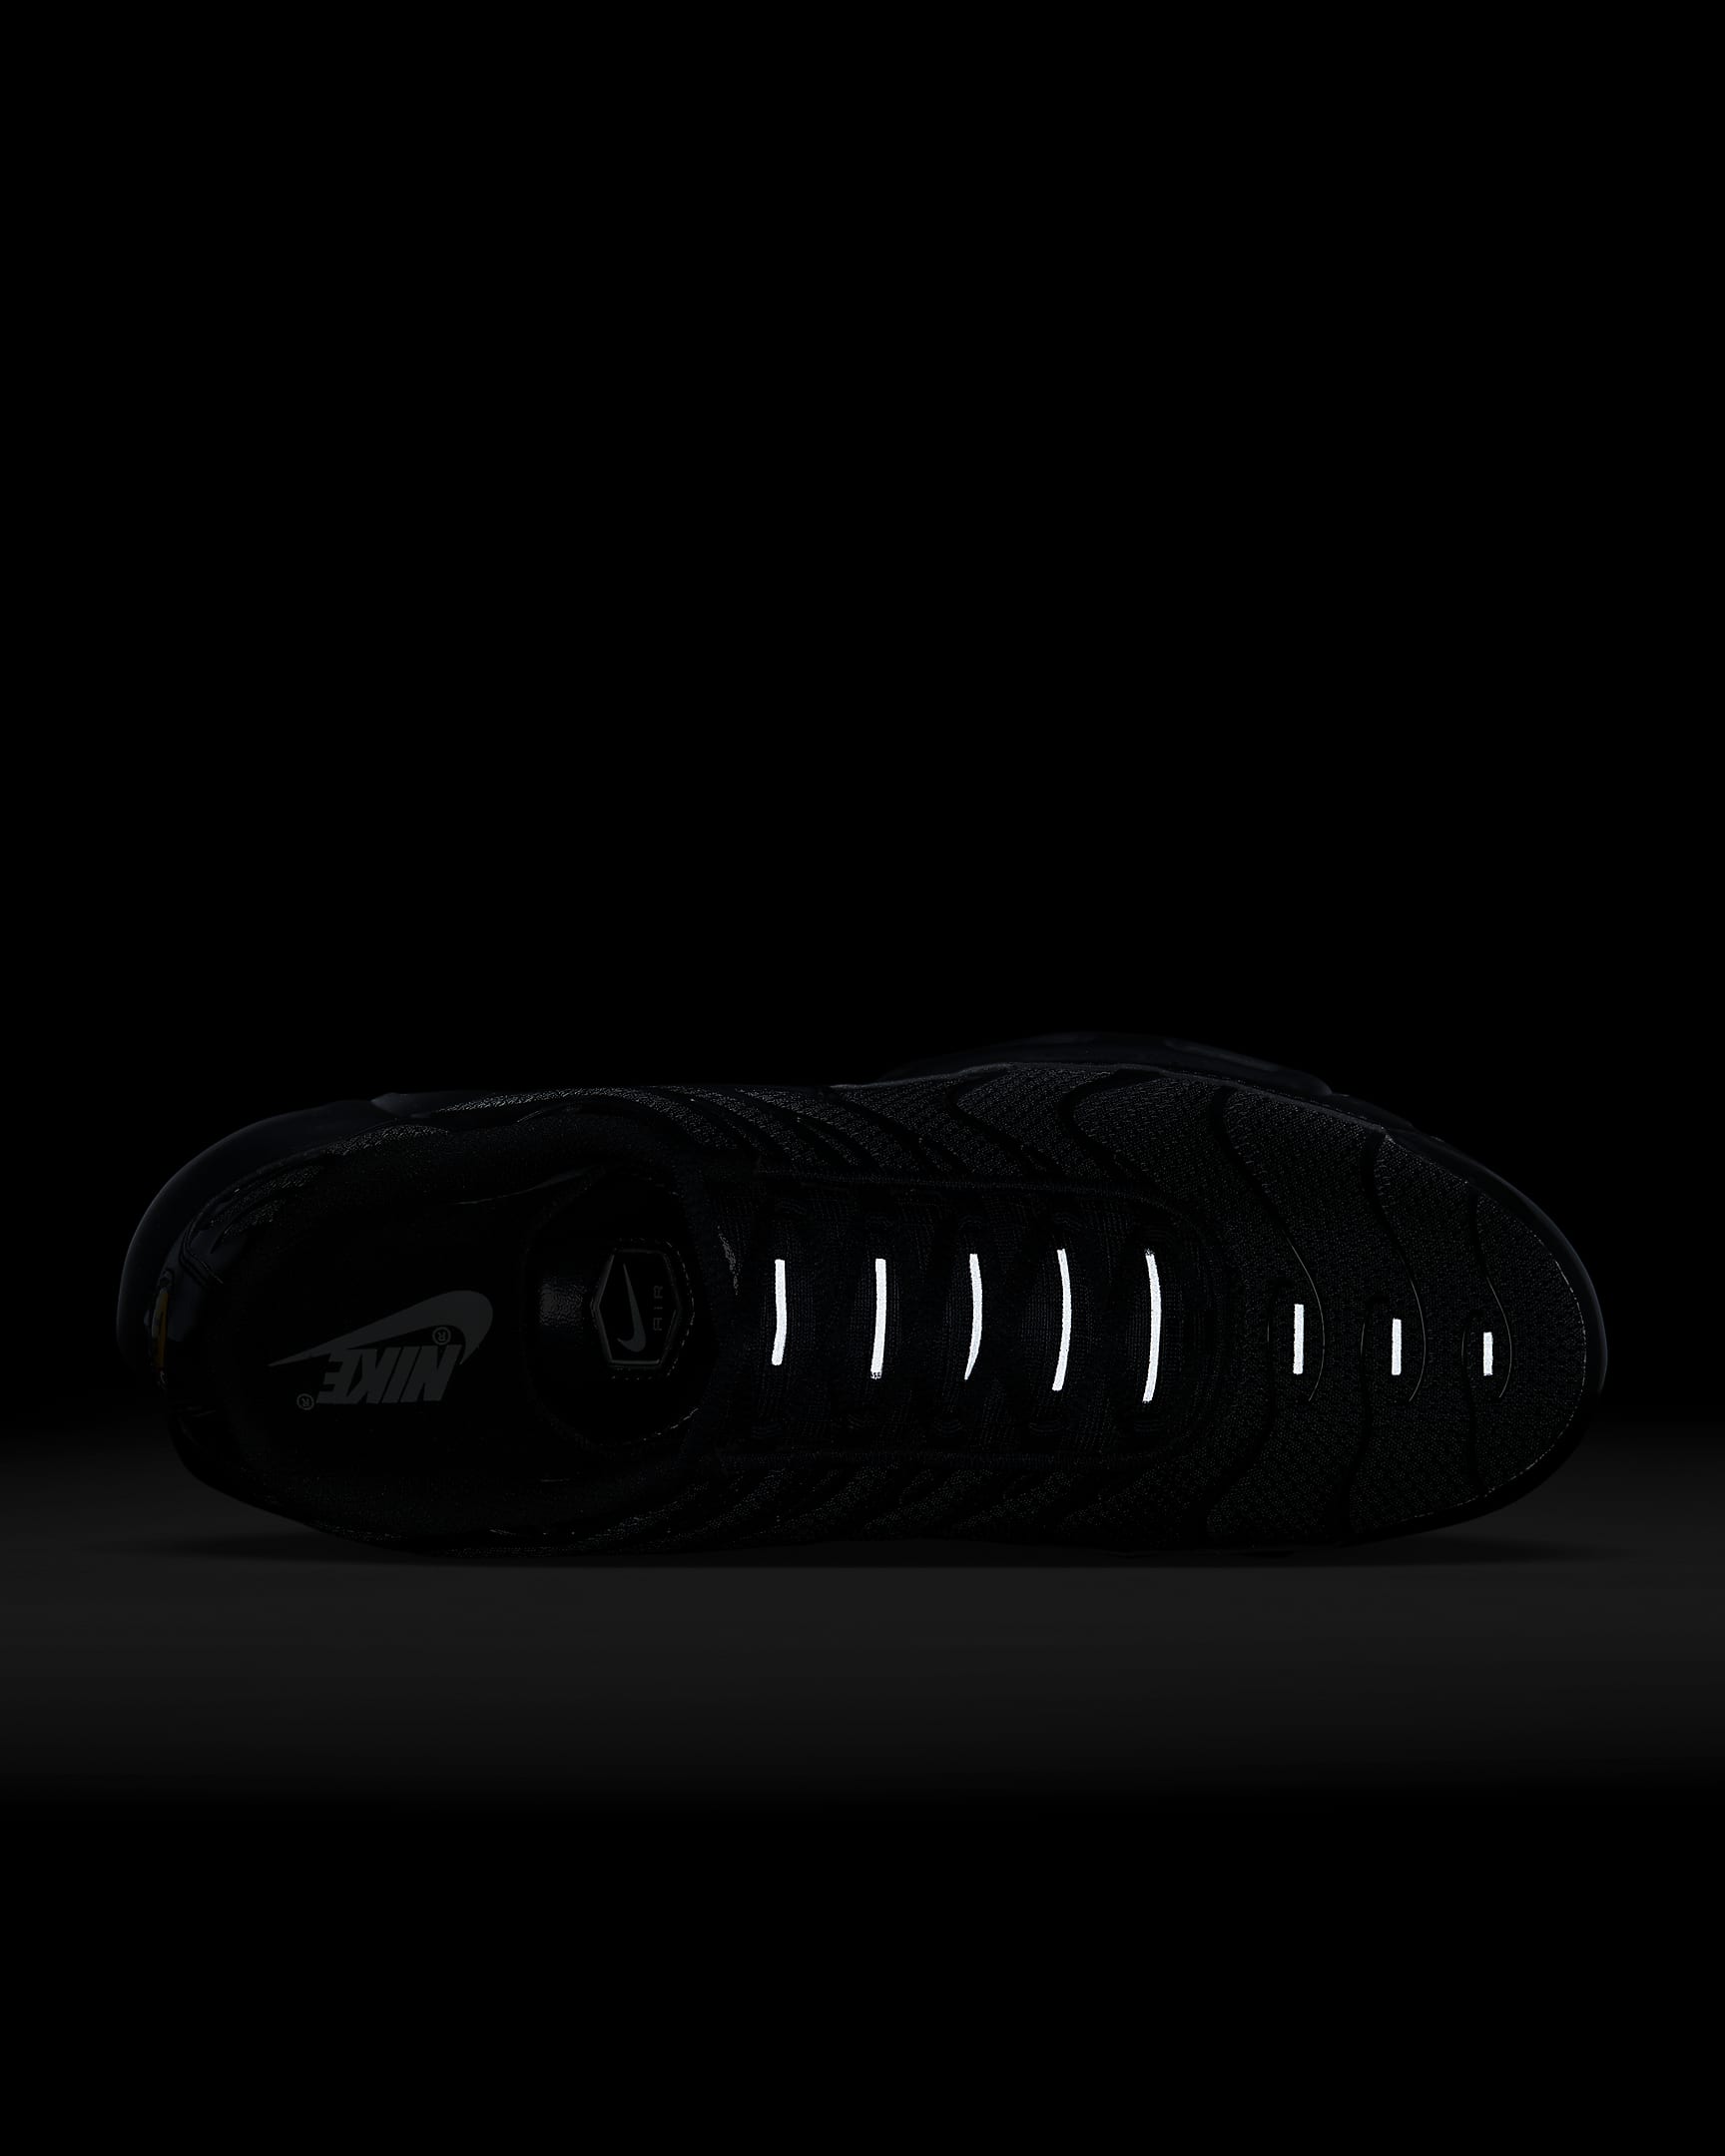 Chaussure Nike Air Max Plus pour homme - Noir/Noir/Noir